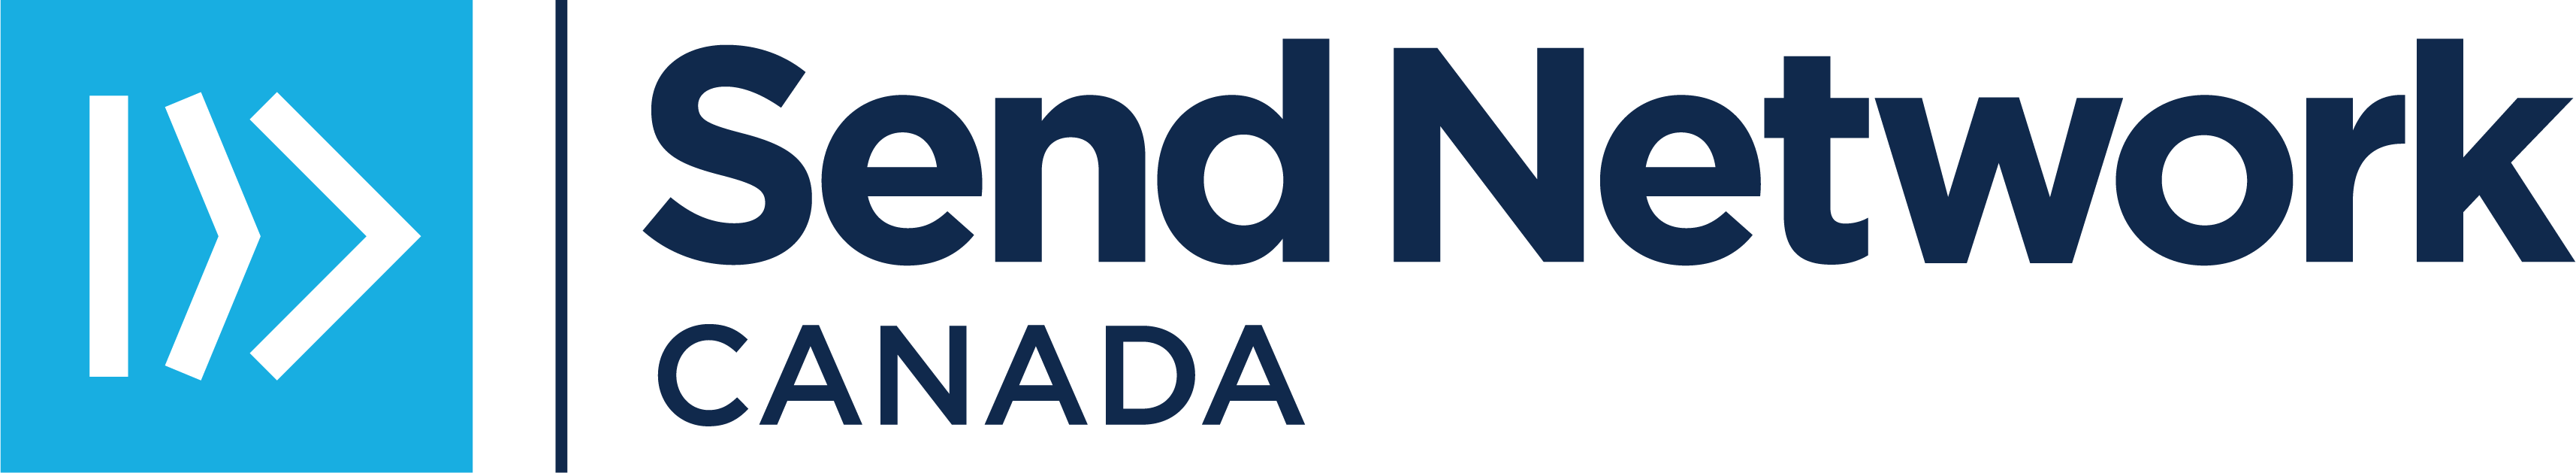 SN Canada Logo_BlueNavy